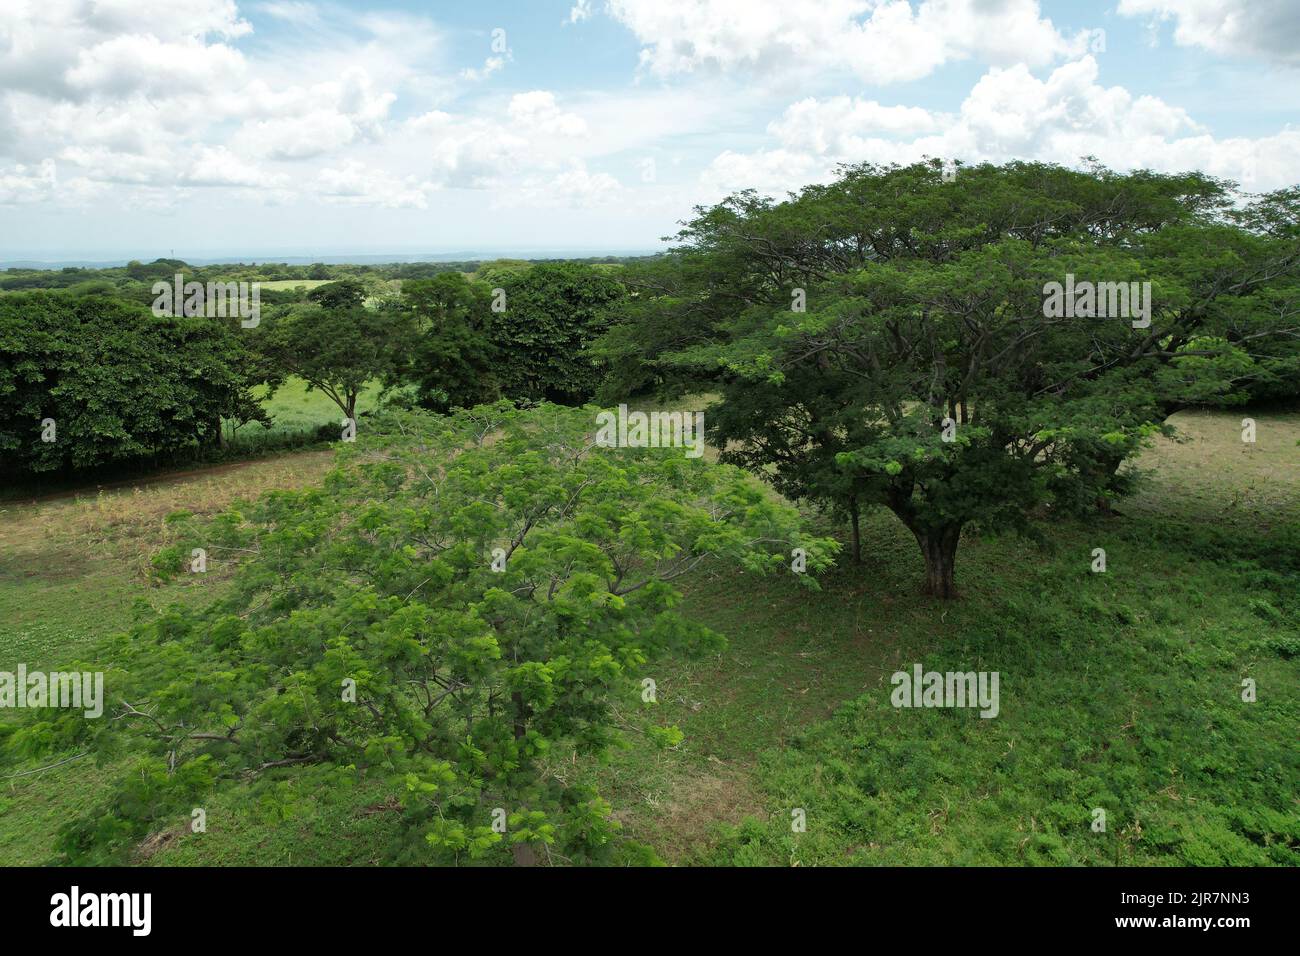 Baum im grünen Feld Luftbild mit blauem Himmel Hintergrund Stockfoto